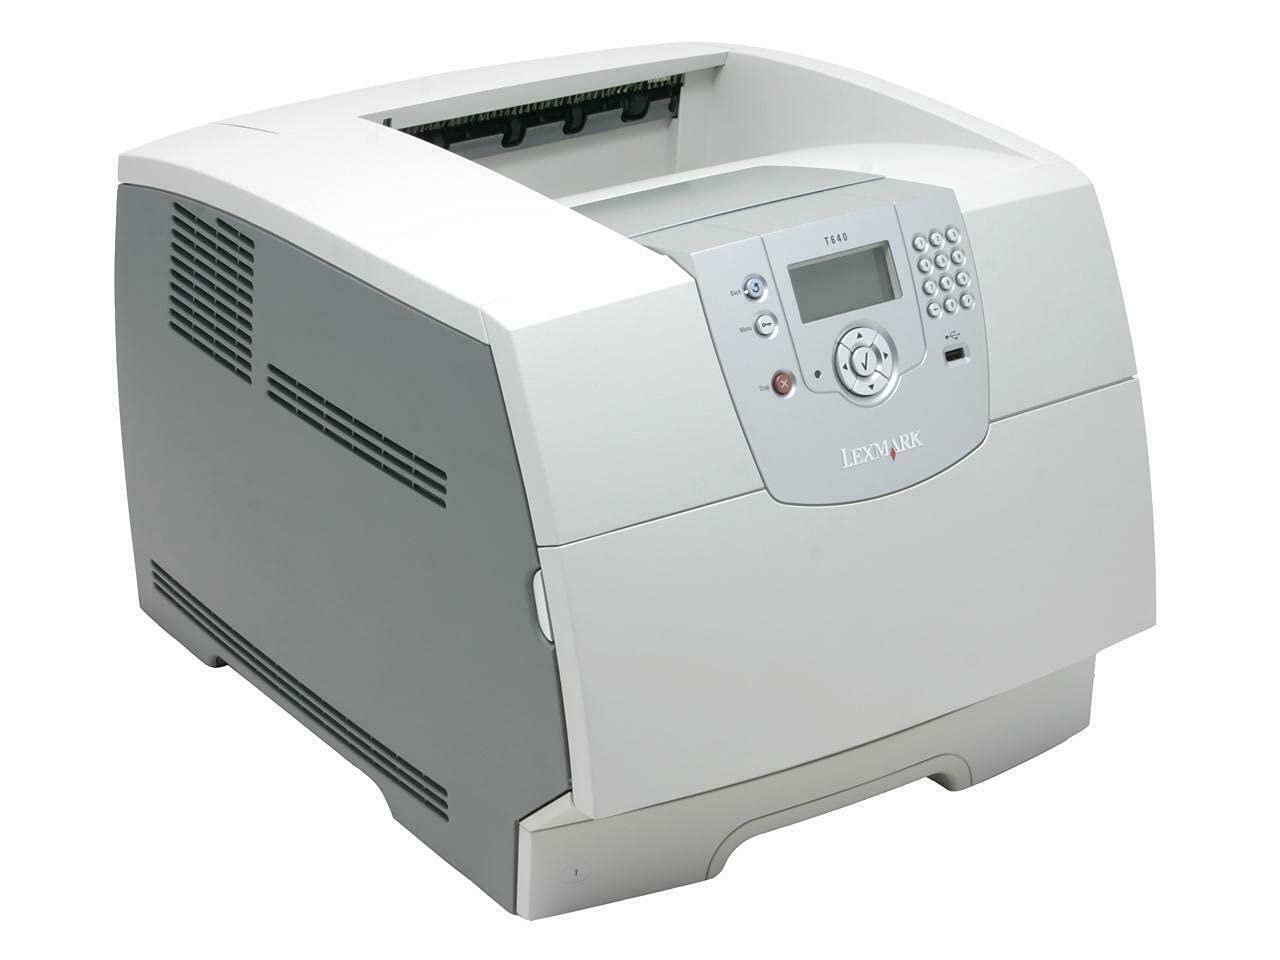 20G0482 - T 644tn B/W Laser Printer